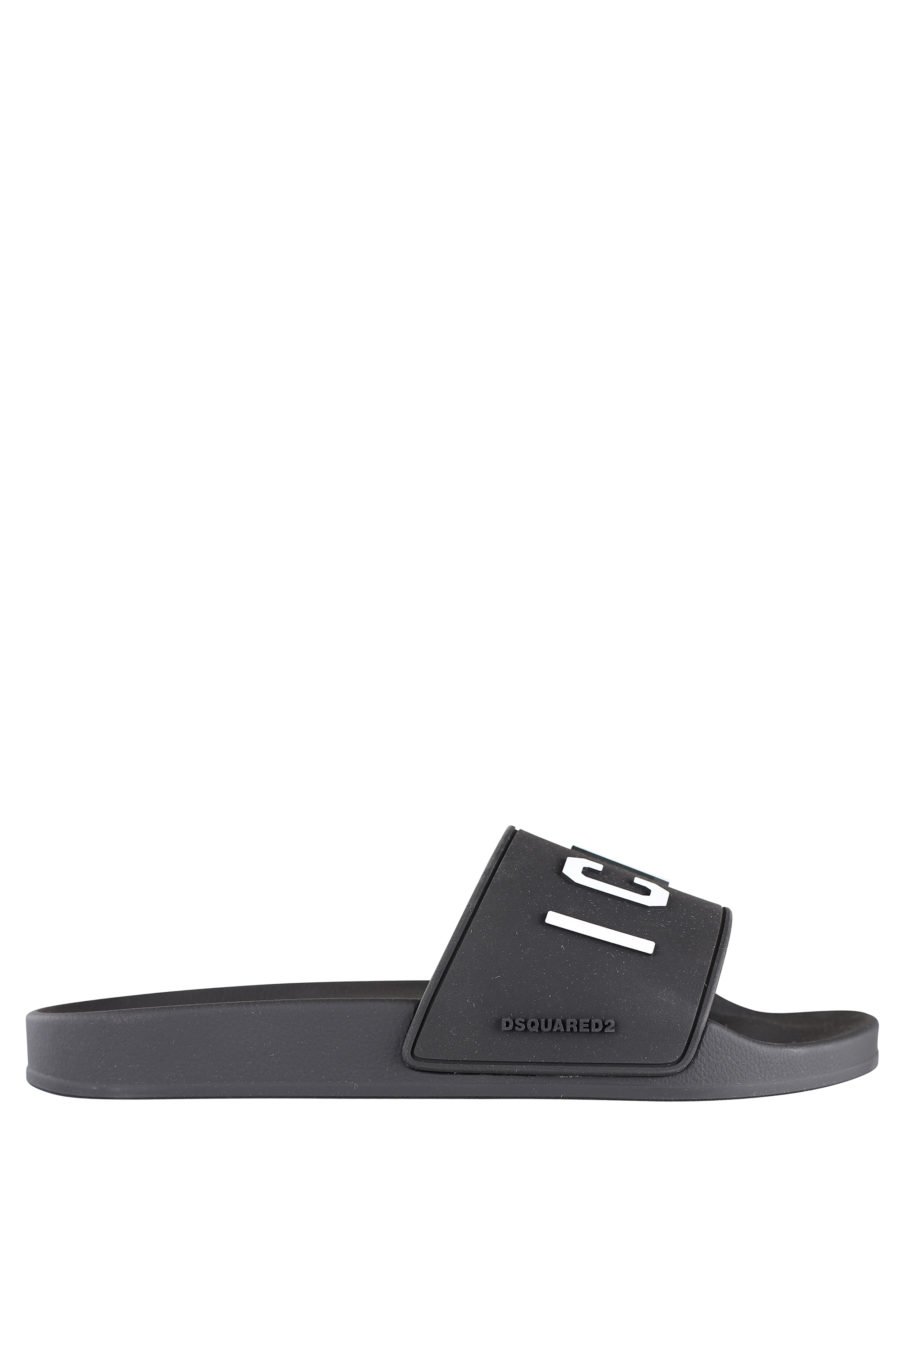 Black flip flops with white "icon" logo - IMG 9946